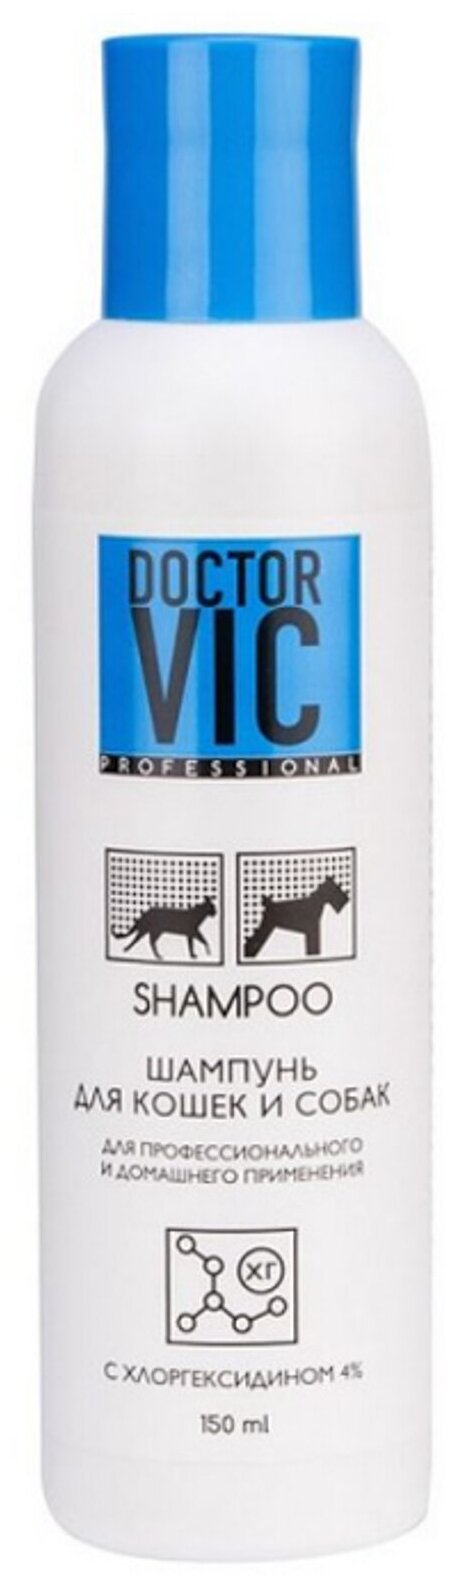 Doctor VIC (Доктор Вик) Шампунь для собак и кошек с хлоргексидином 4% 150 мл